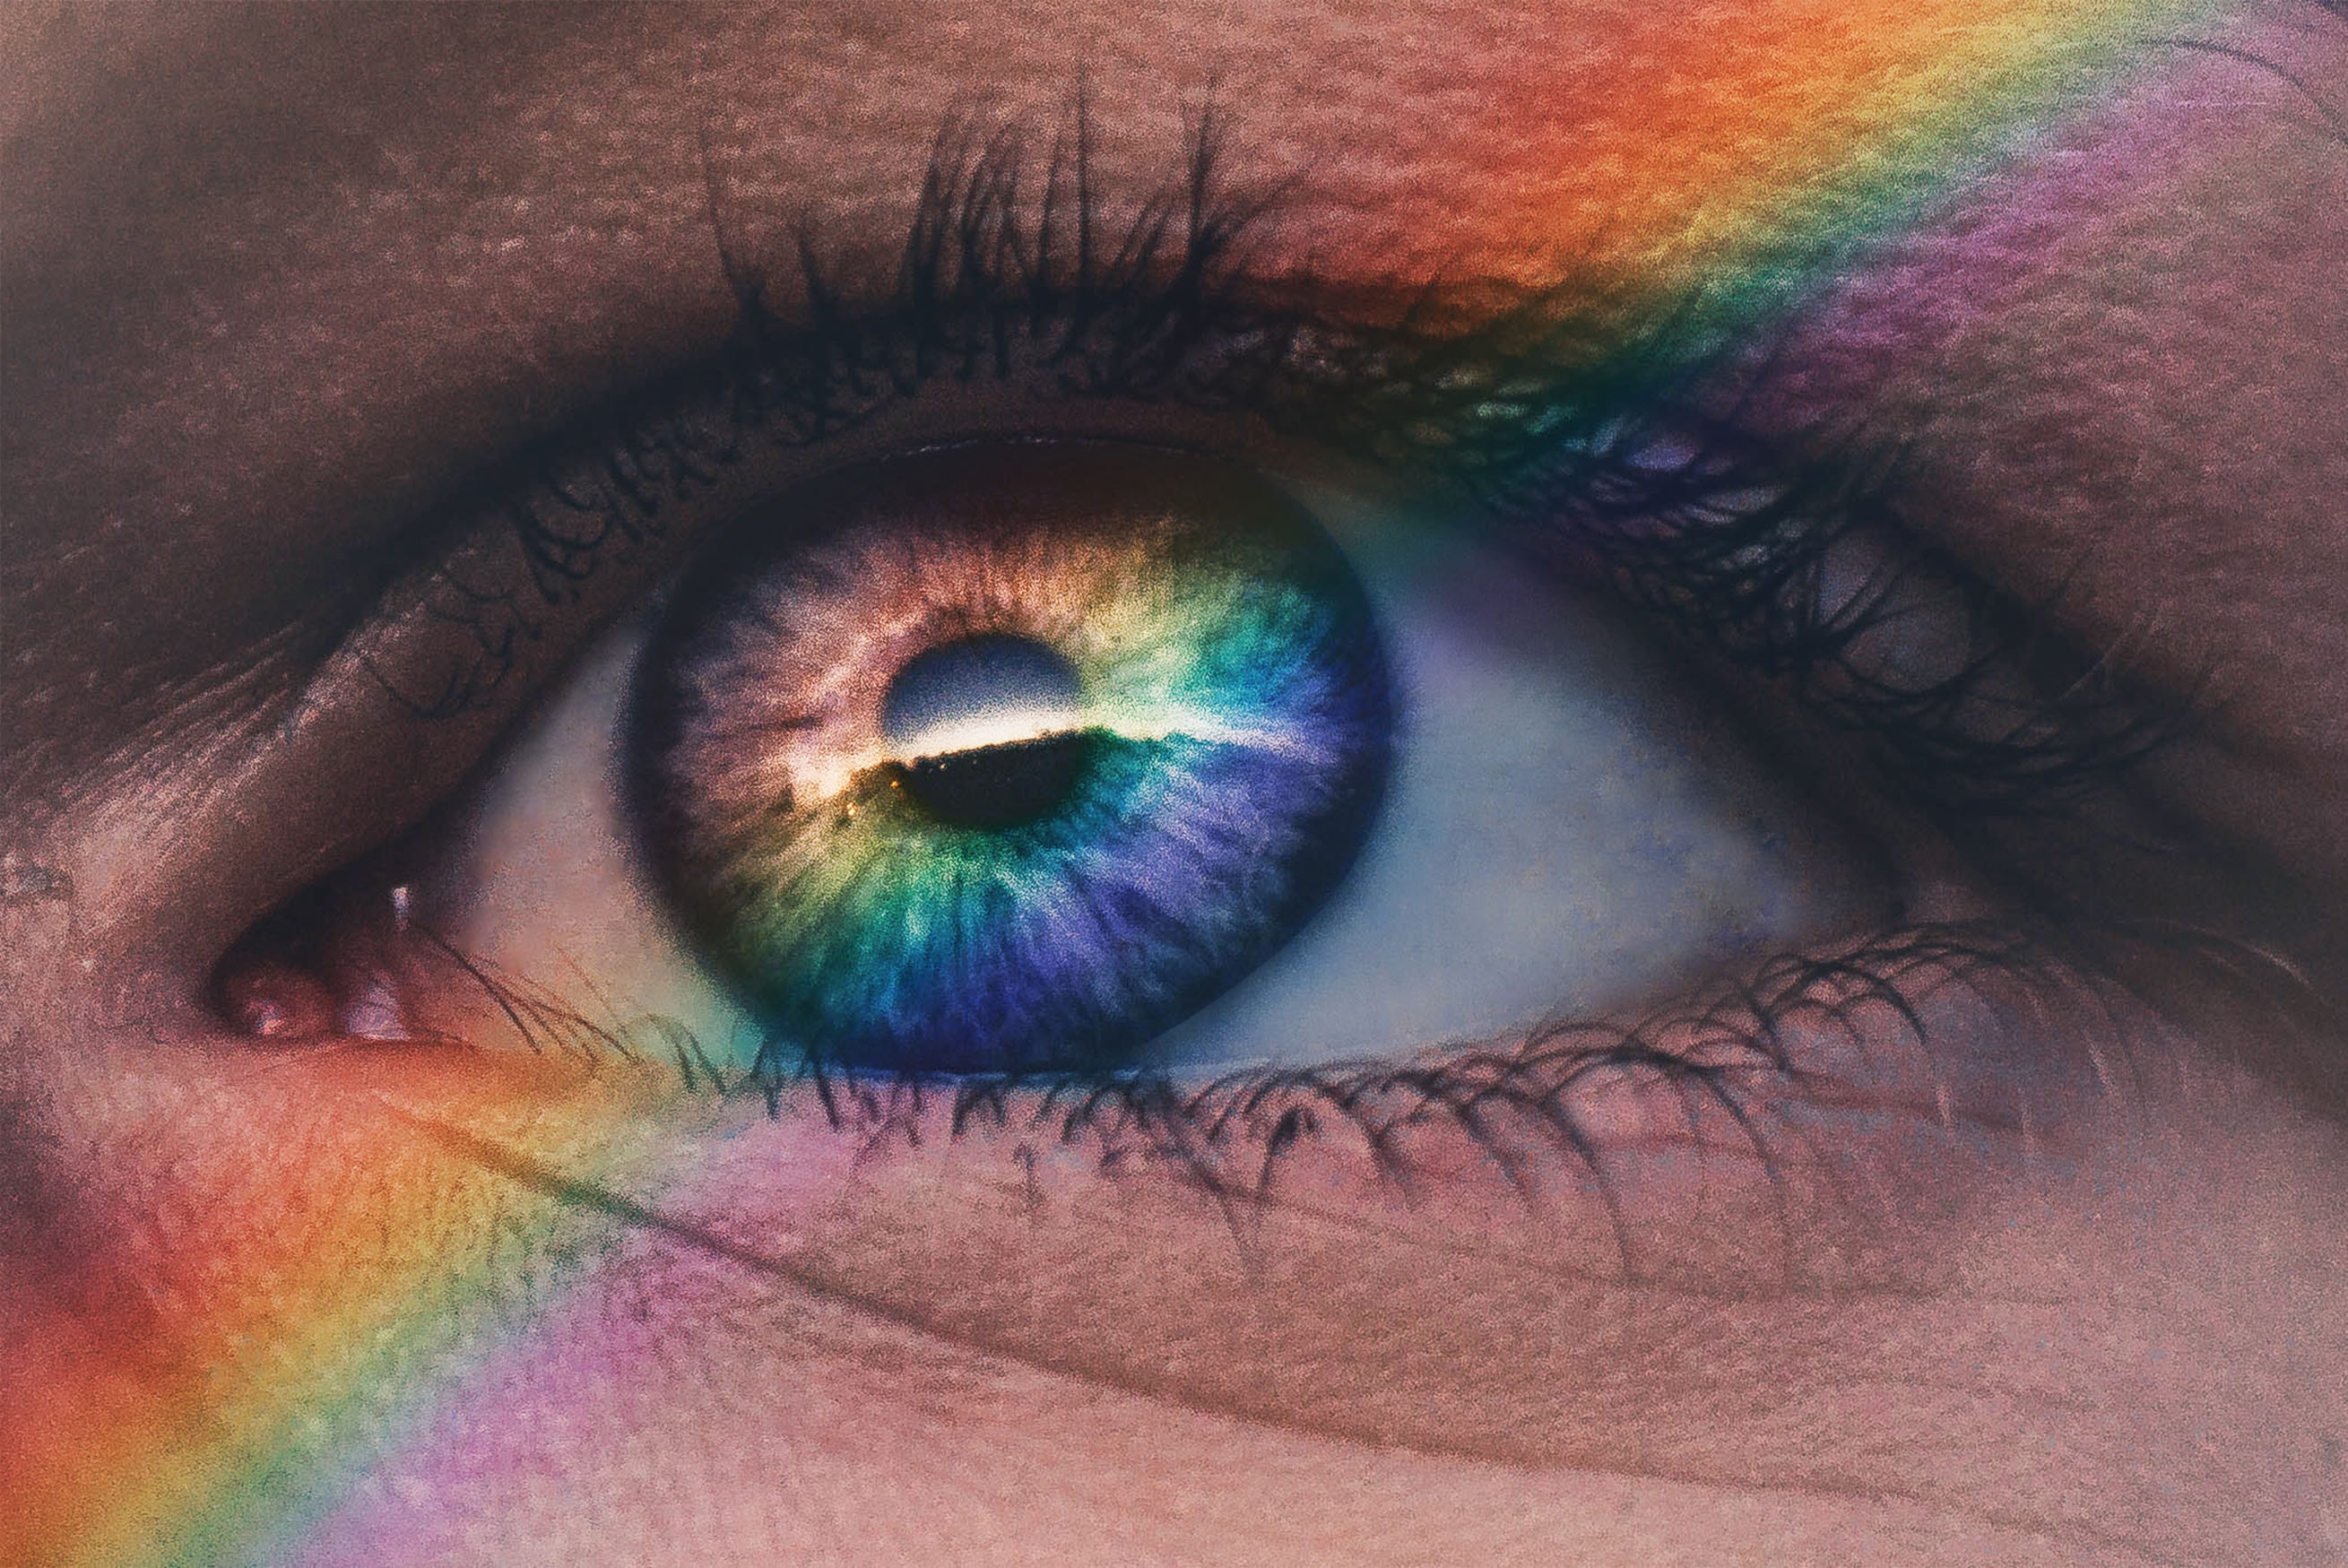 Un arcoiris sobre el ojo de una persona